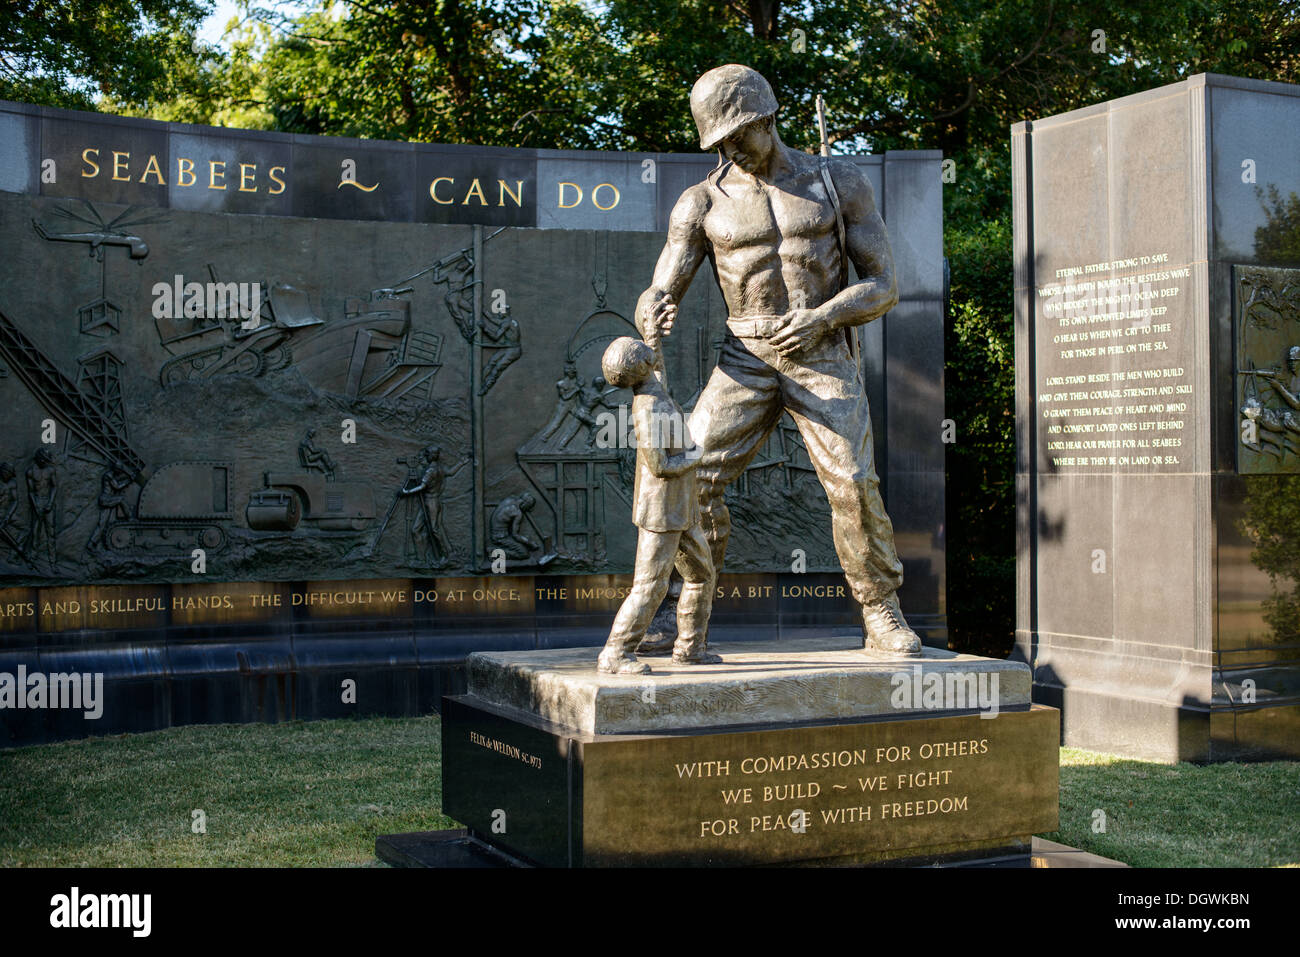 Ein Denkmal für Marine Seabees in Arlington National Cemetery in Arlington, Virginia, direkt gegenüber der National Mall in Washington DC. Stockfoto